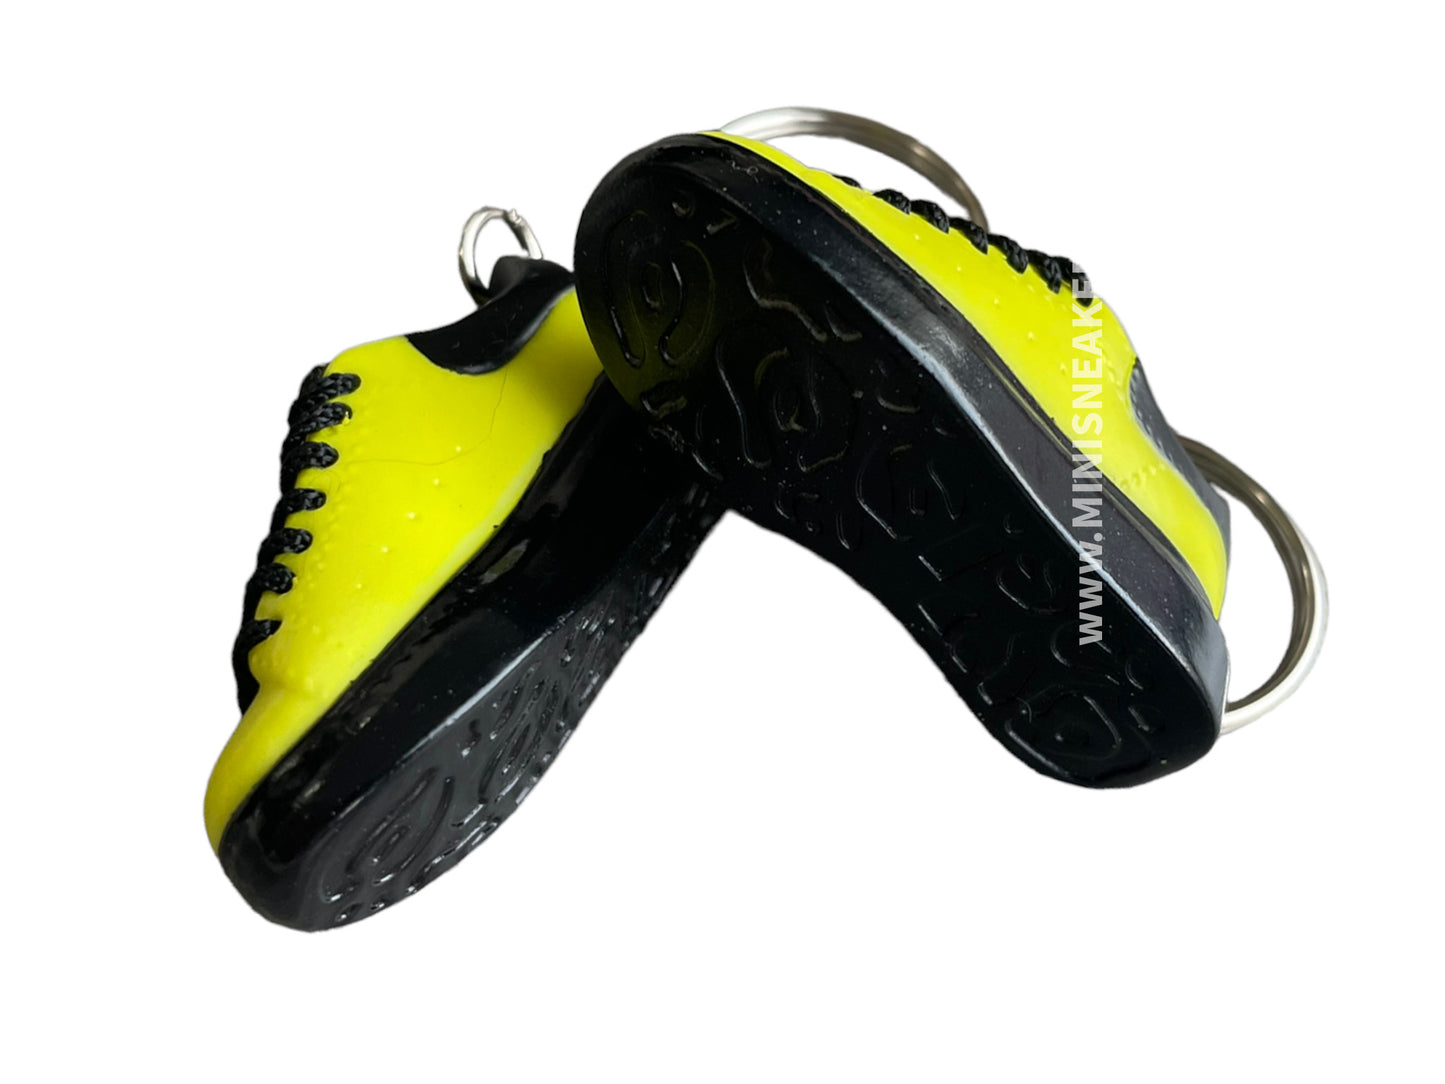 Mini sneaker keychain 3D  Alexander Mc Queen Yellow Black